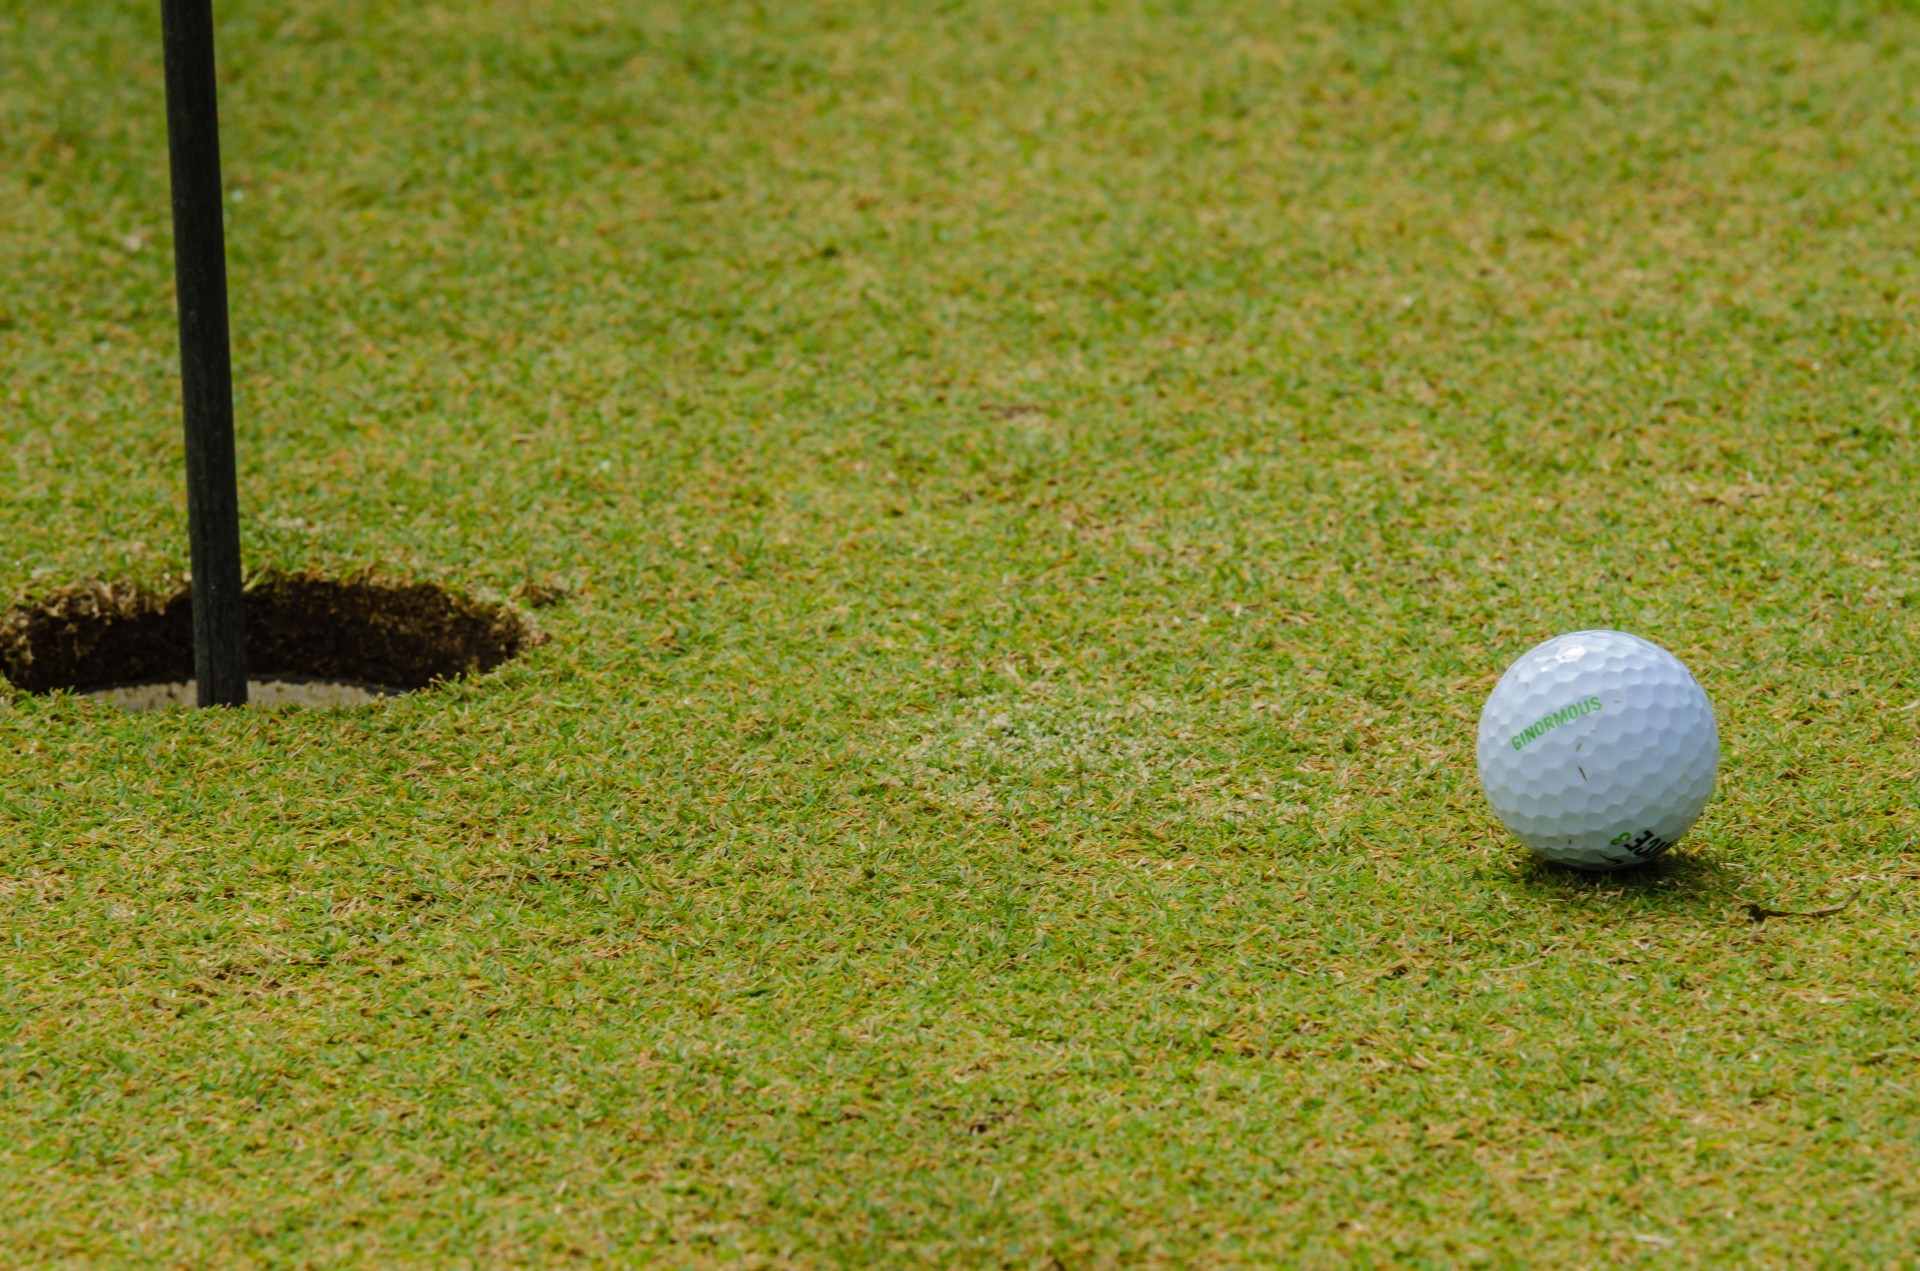 Мяч для гольфа рядом с отверстием